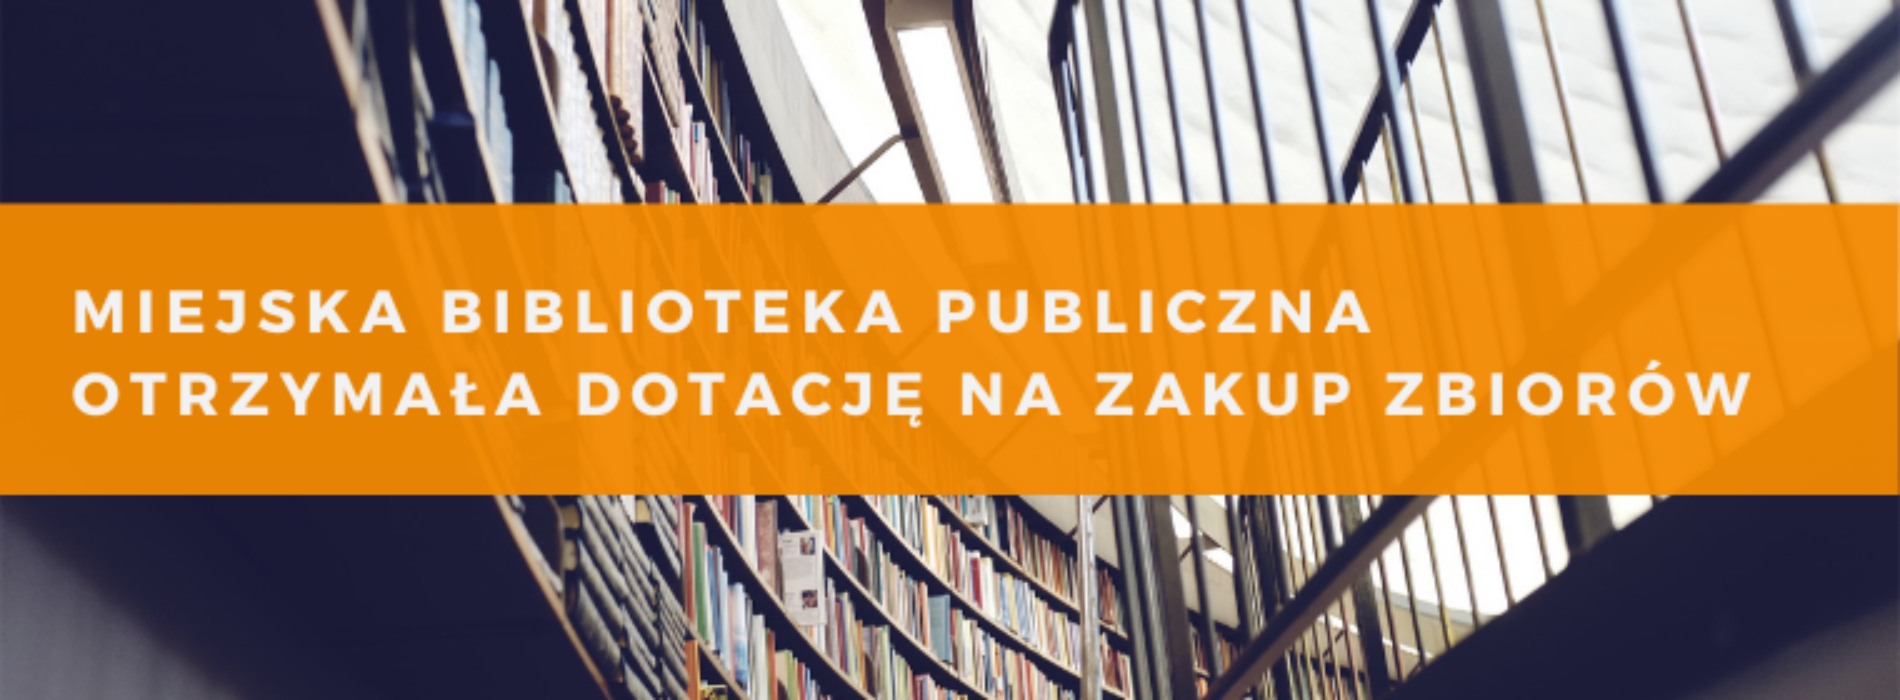 Miejska Biblioteka Publiczna otrzymała dotację na zakup zbiorów